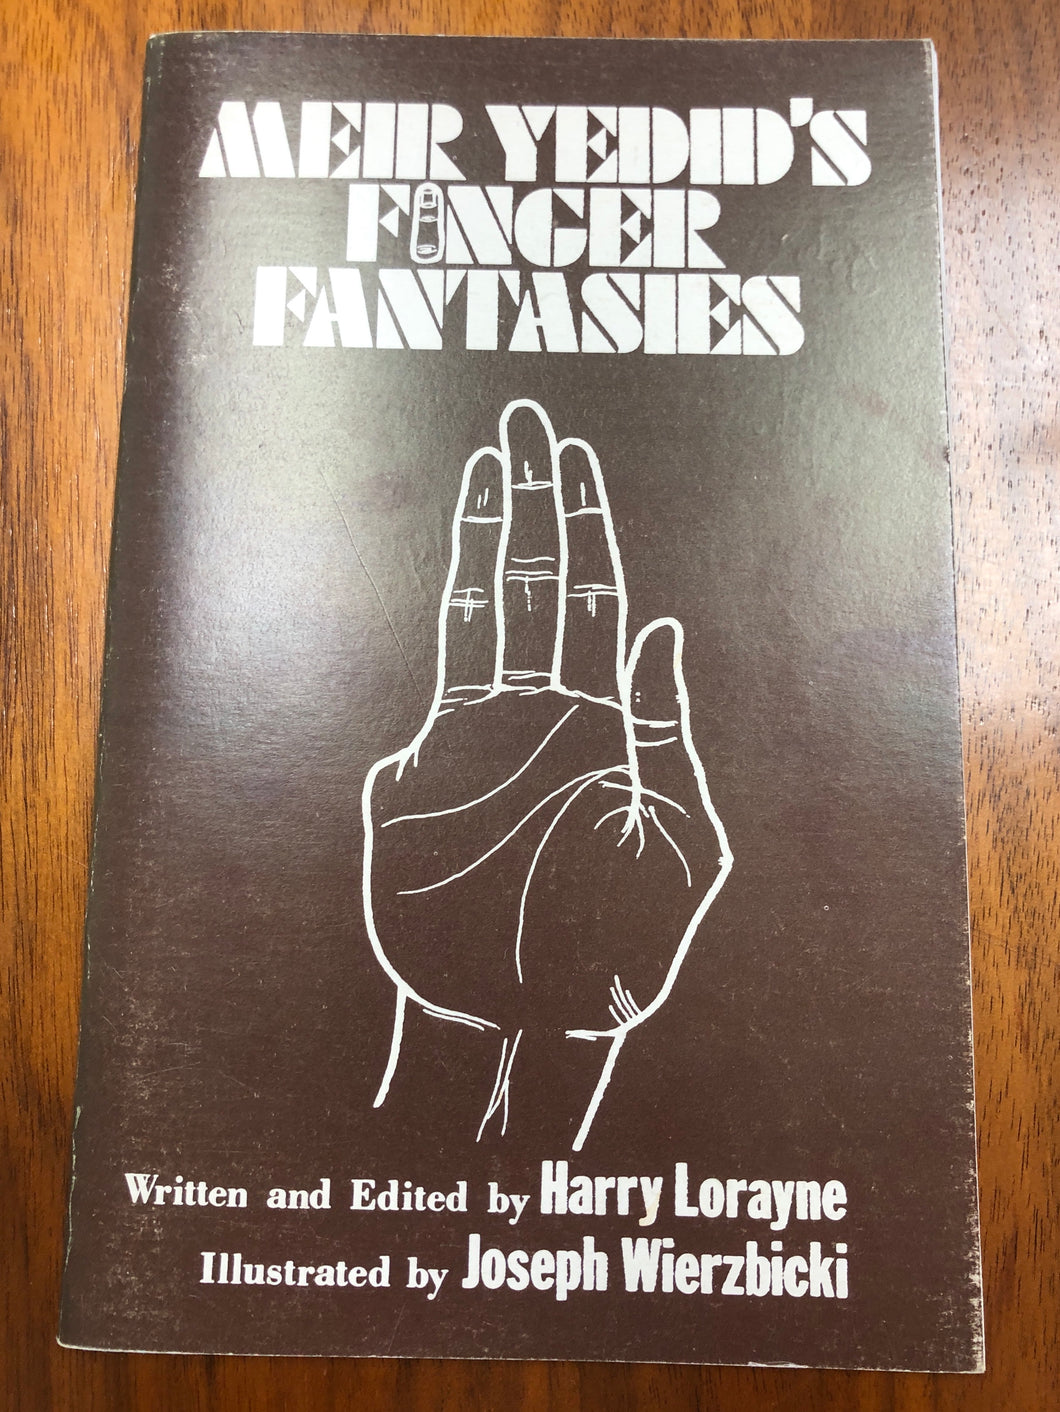 Meir Yedid's Finger Fantasies by Harry Lorayne